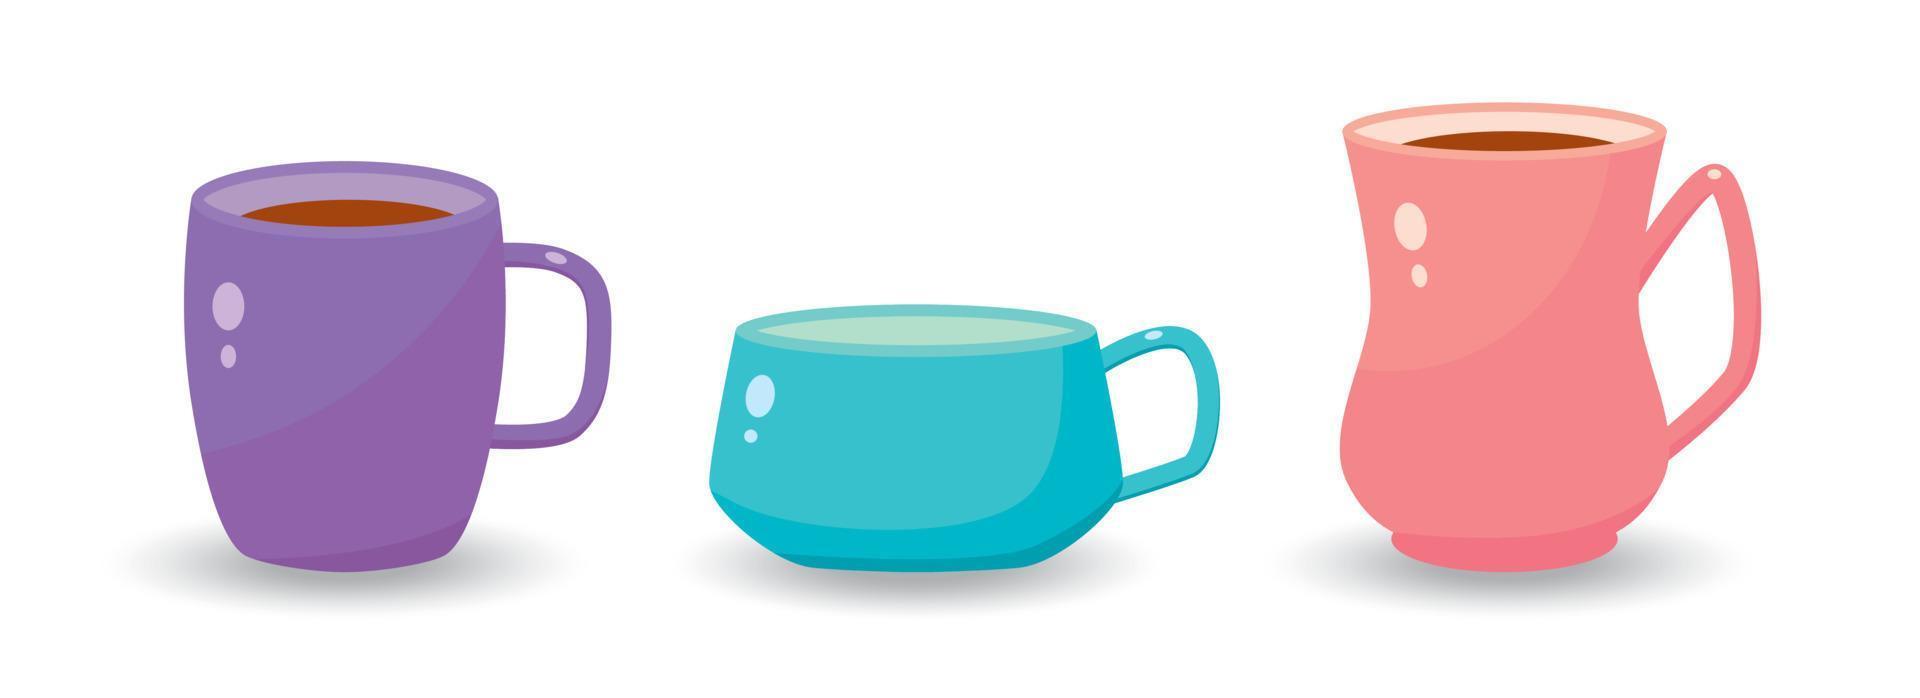 conjunto de vectores con tazas para té, café